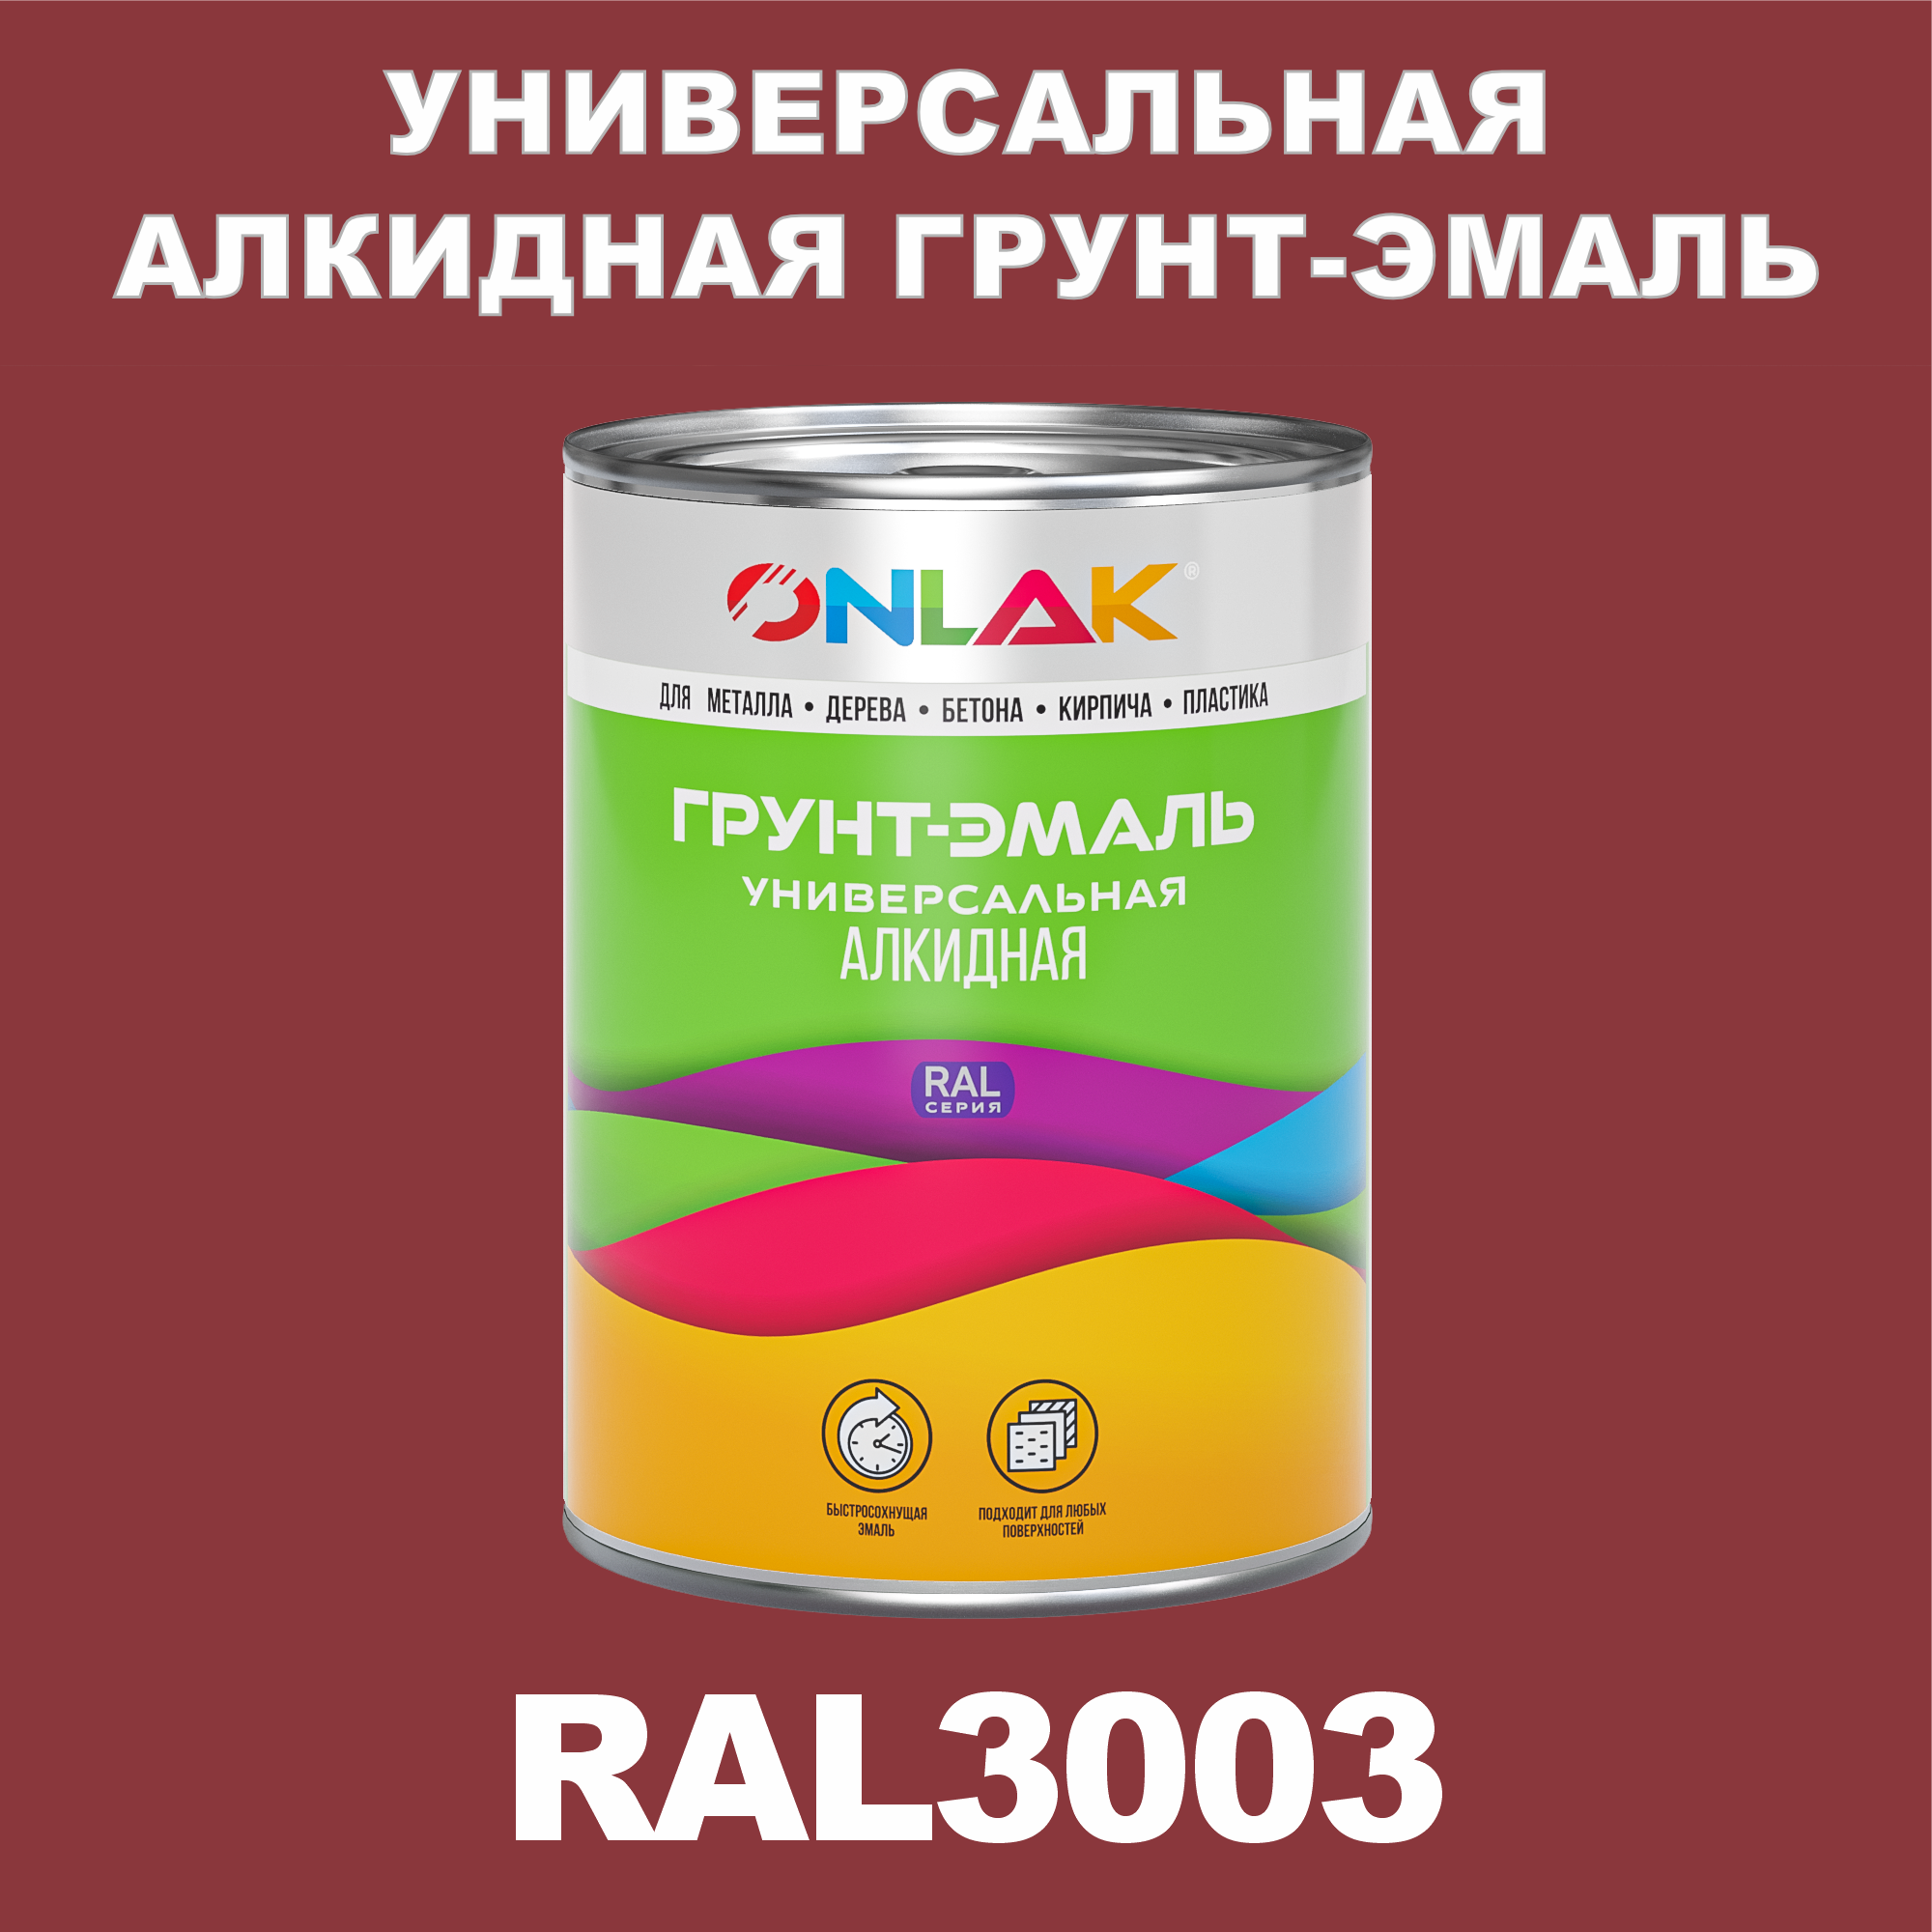 Грунт-эмаль ONLAK 1К RAL3003 антикоррозионная алкидная по металлу по ржавчине 1 кг